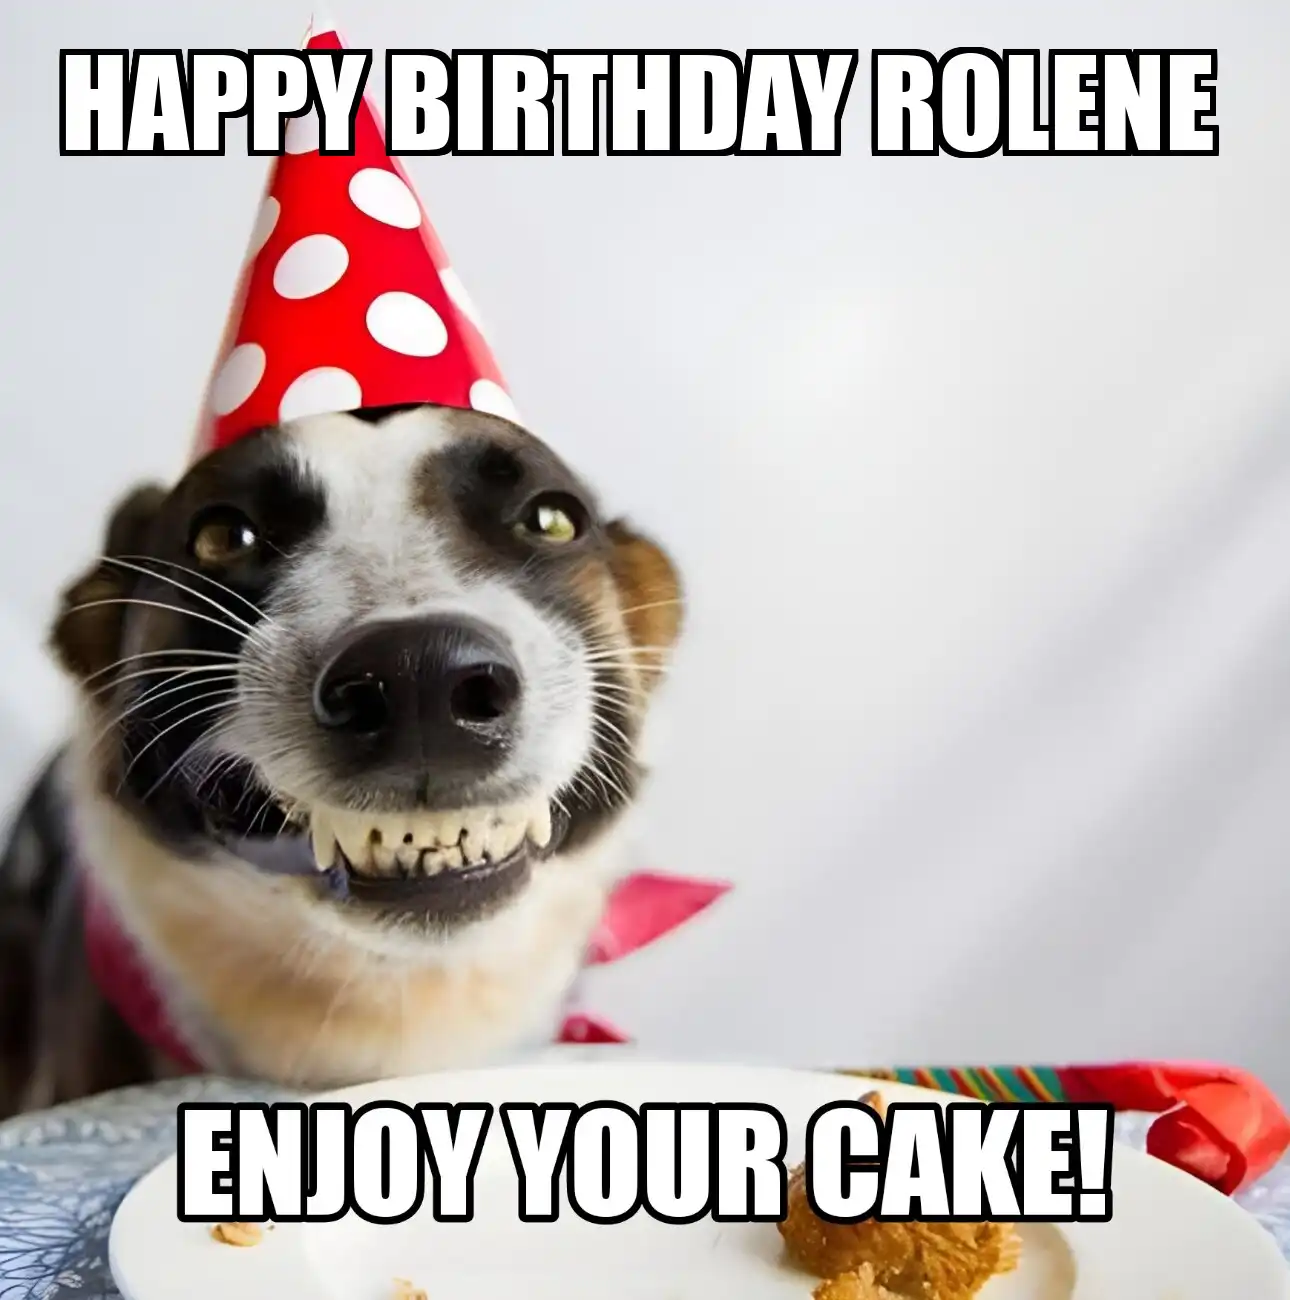 Happy Birthday Rolene Enjoy Your Cake Dog Meme